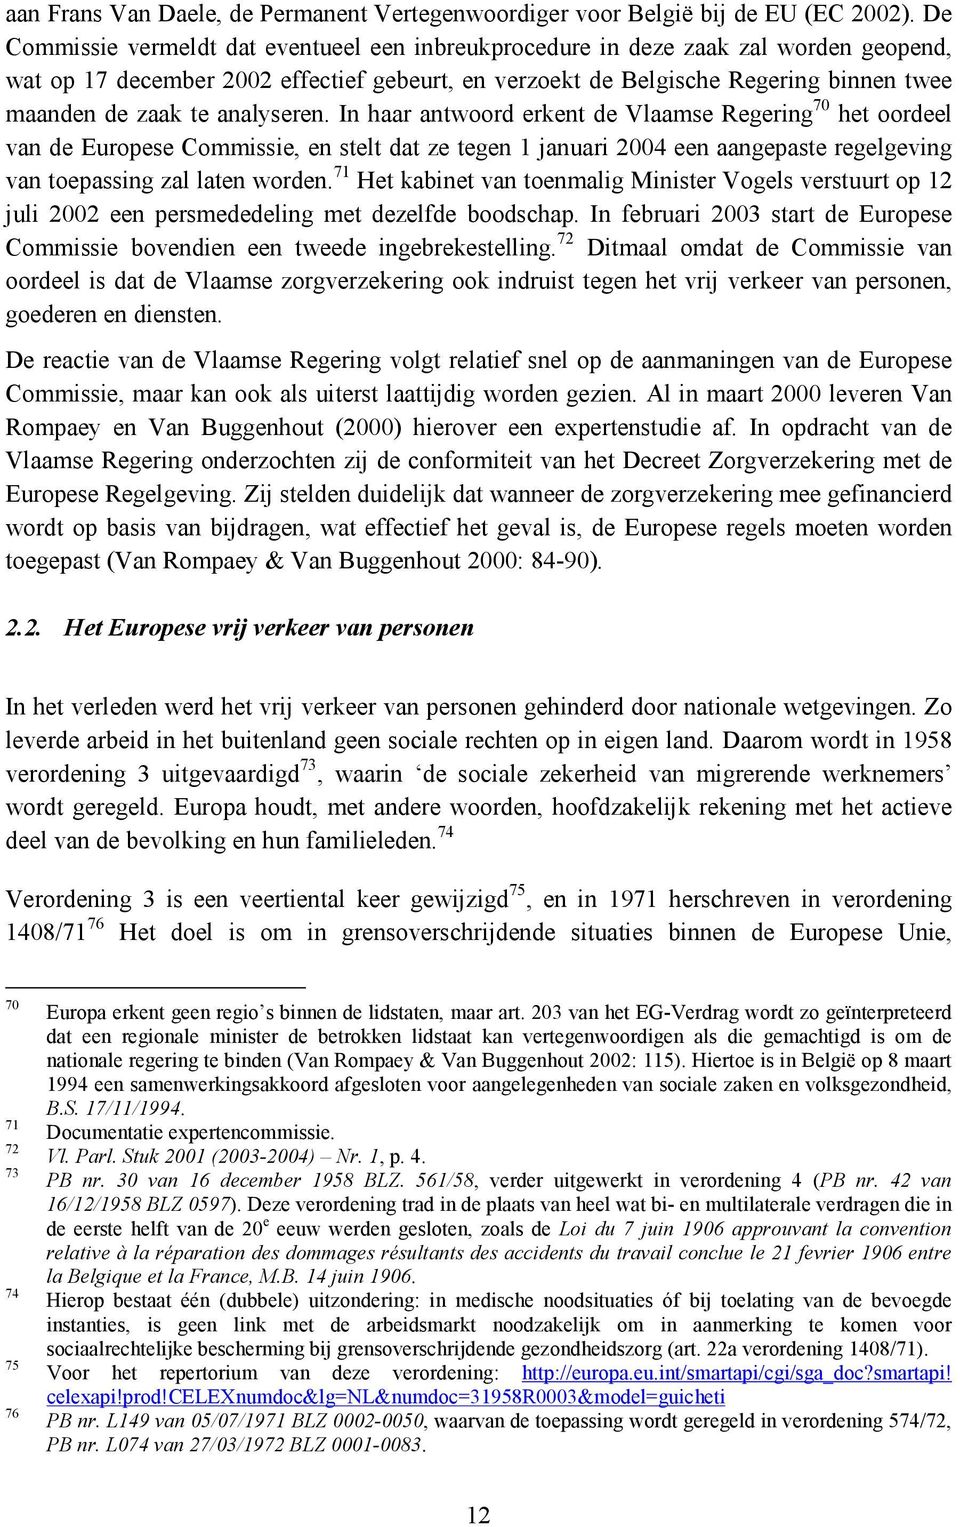 analyseren. In haar antwoord erkent de Vlaamse Regering 70 het oordeel van de Europese Commissie, en stelt dat ze tegen 1 januari 2004 een aangepaste regelgeving van toepassing zal laten worden.